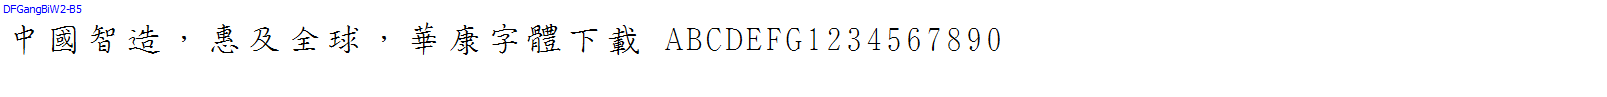 華康字體DFGangBiW2-B5.TTF